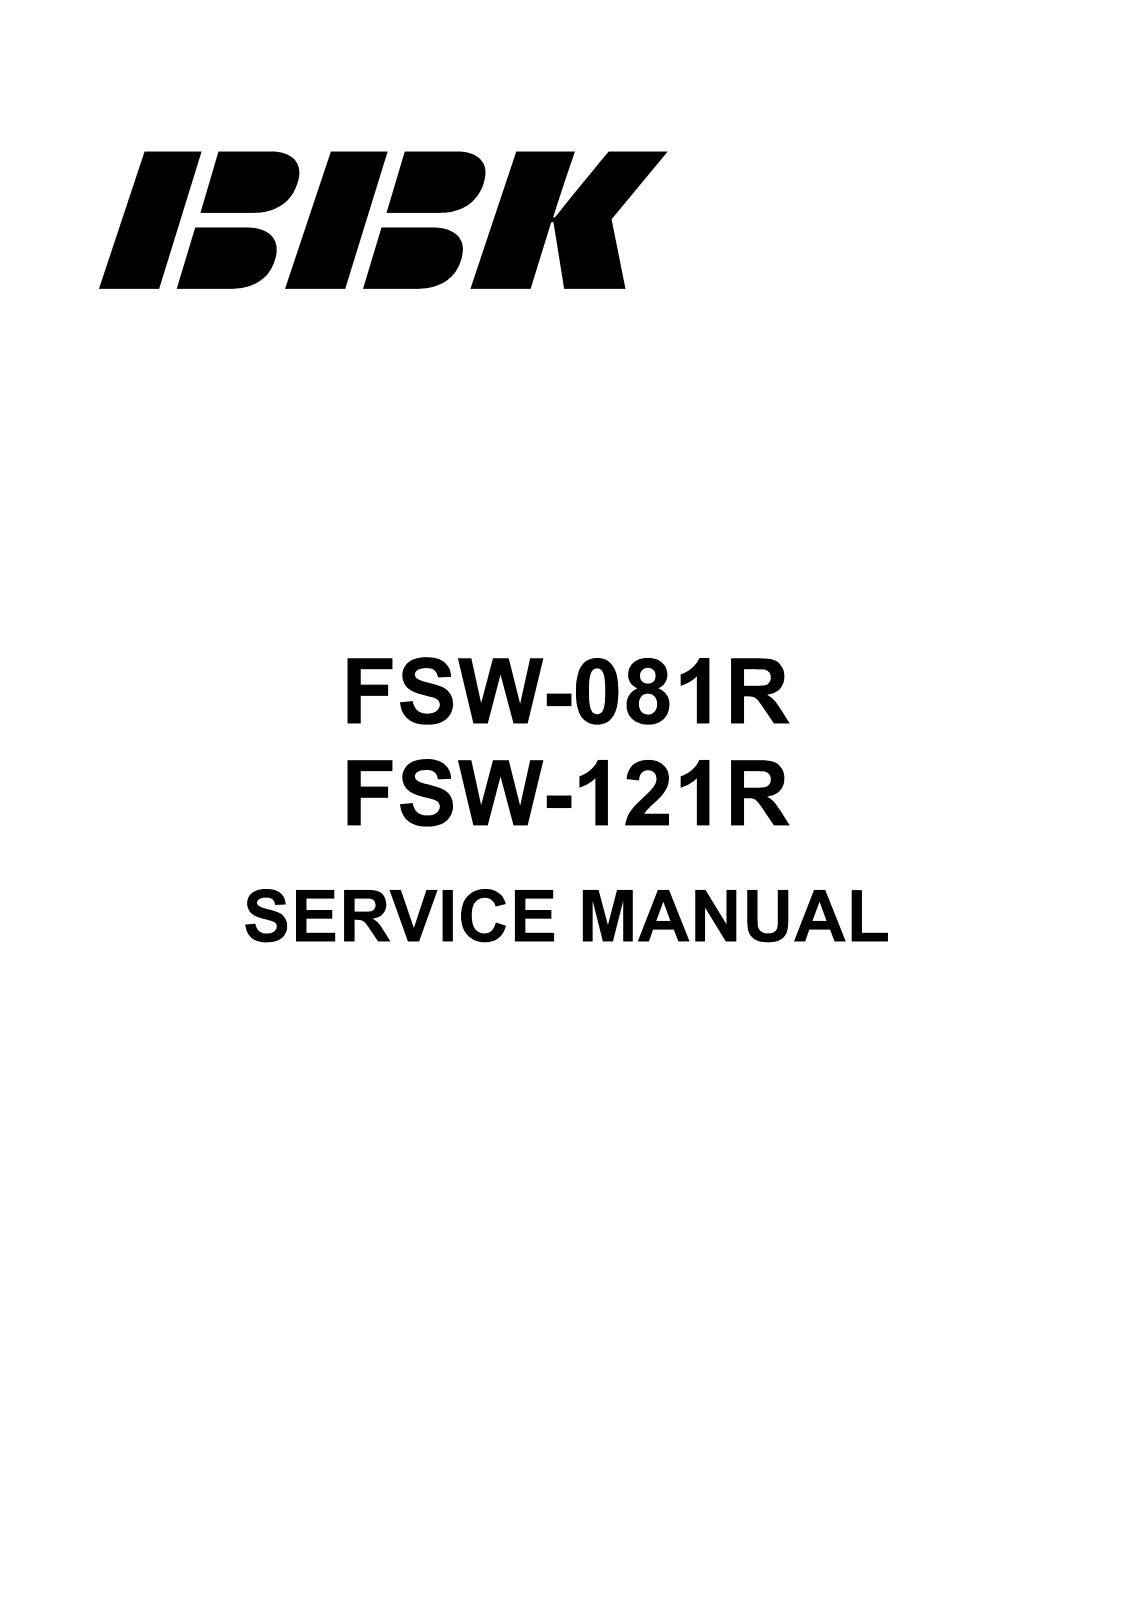 BBK FSW-081R, FSW-121R Service Manual